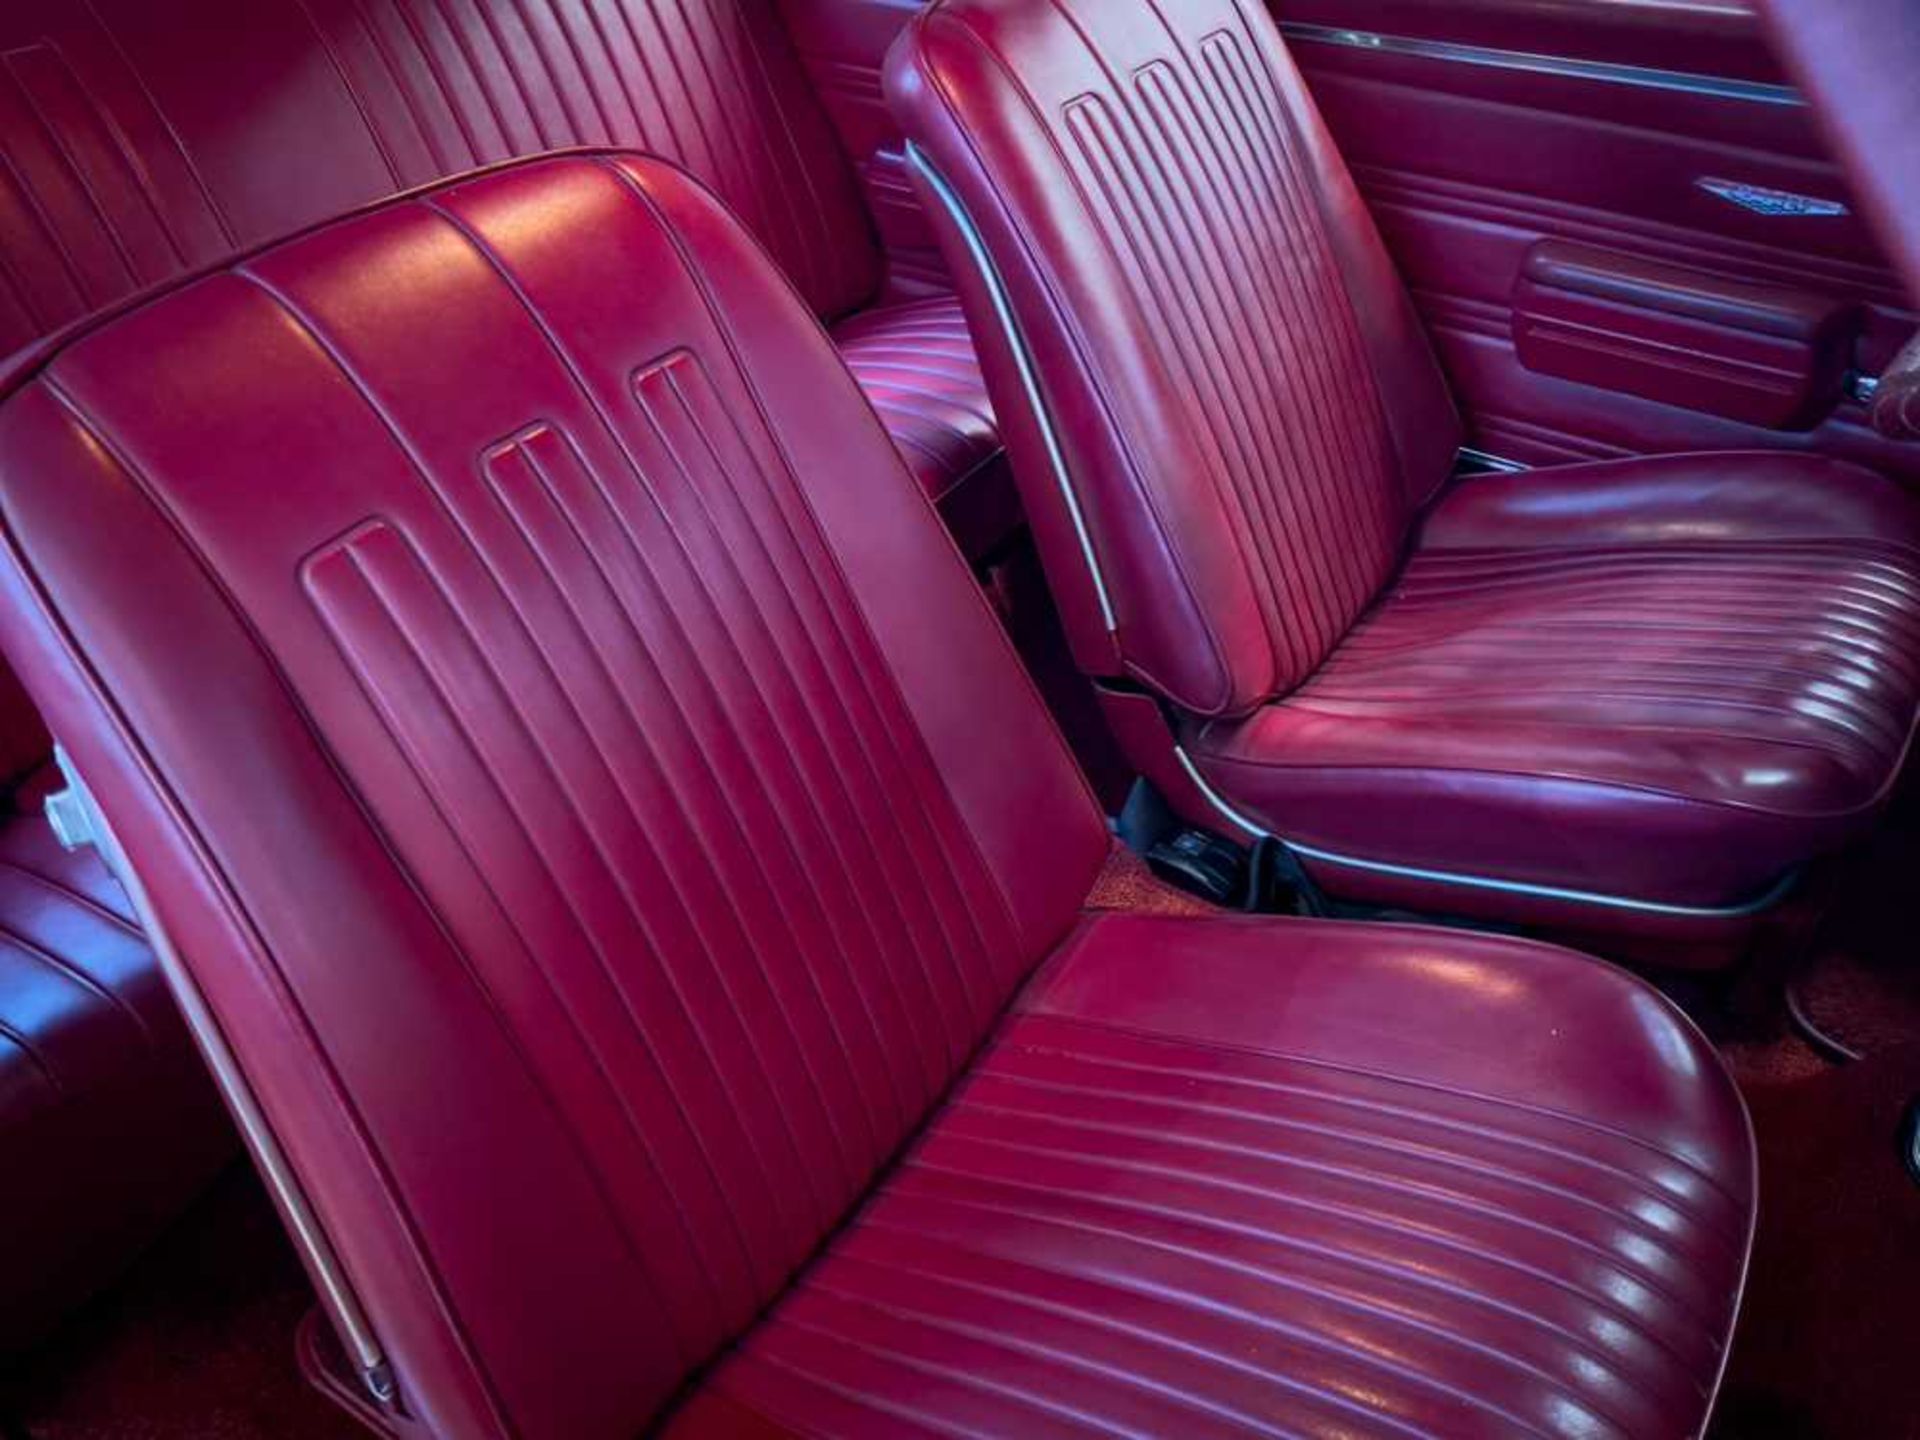 1968 Pontiac GTO - Image 63 of 64